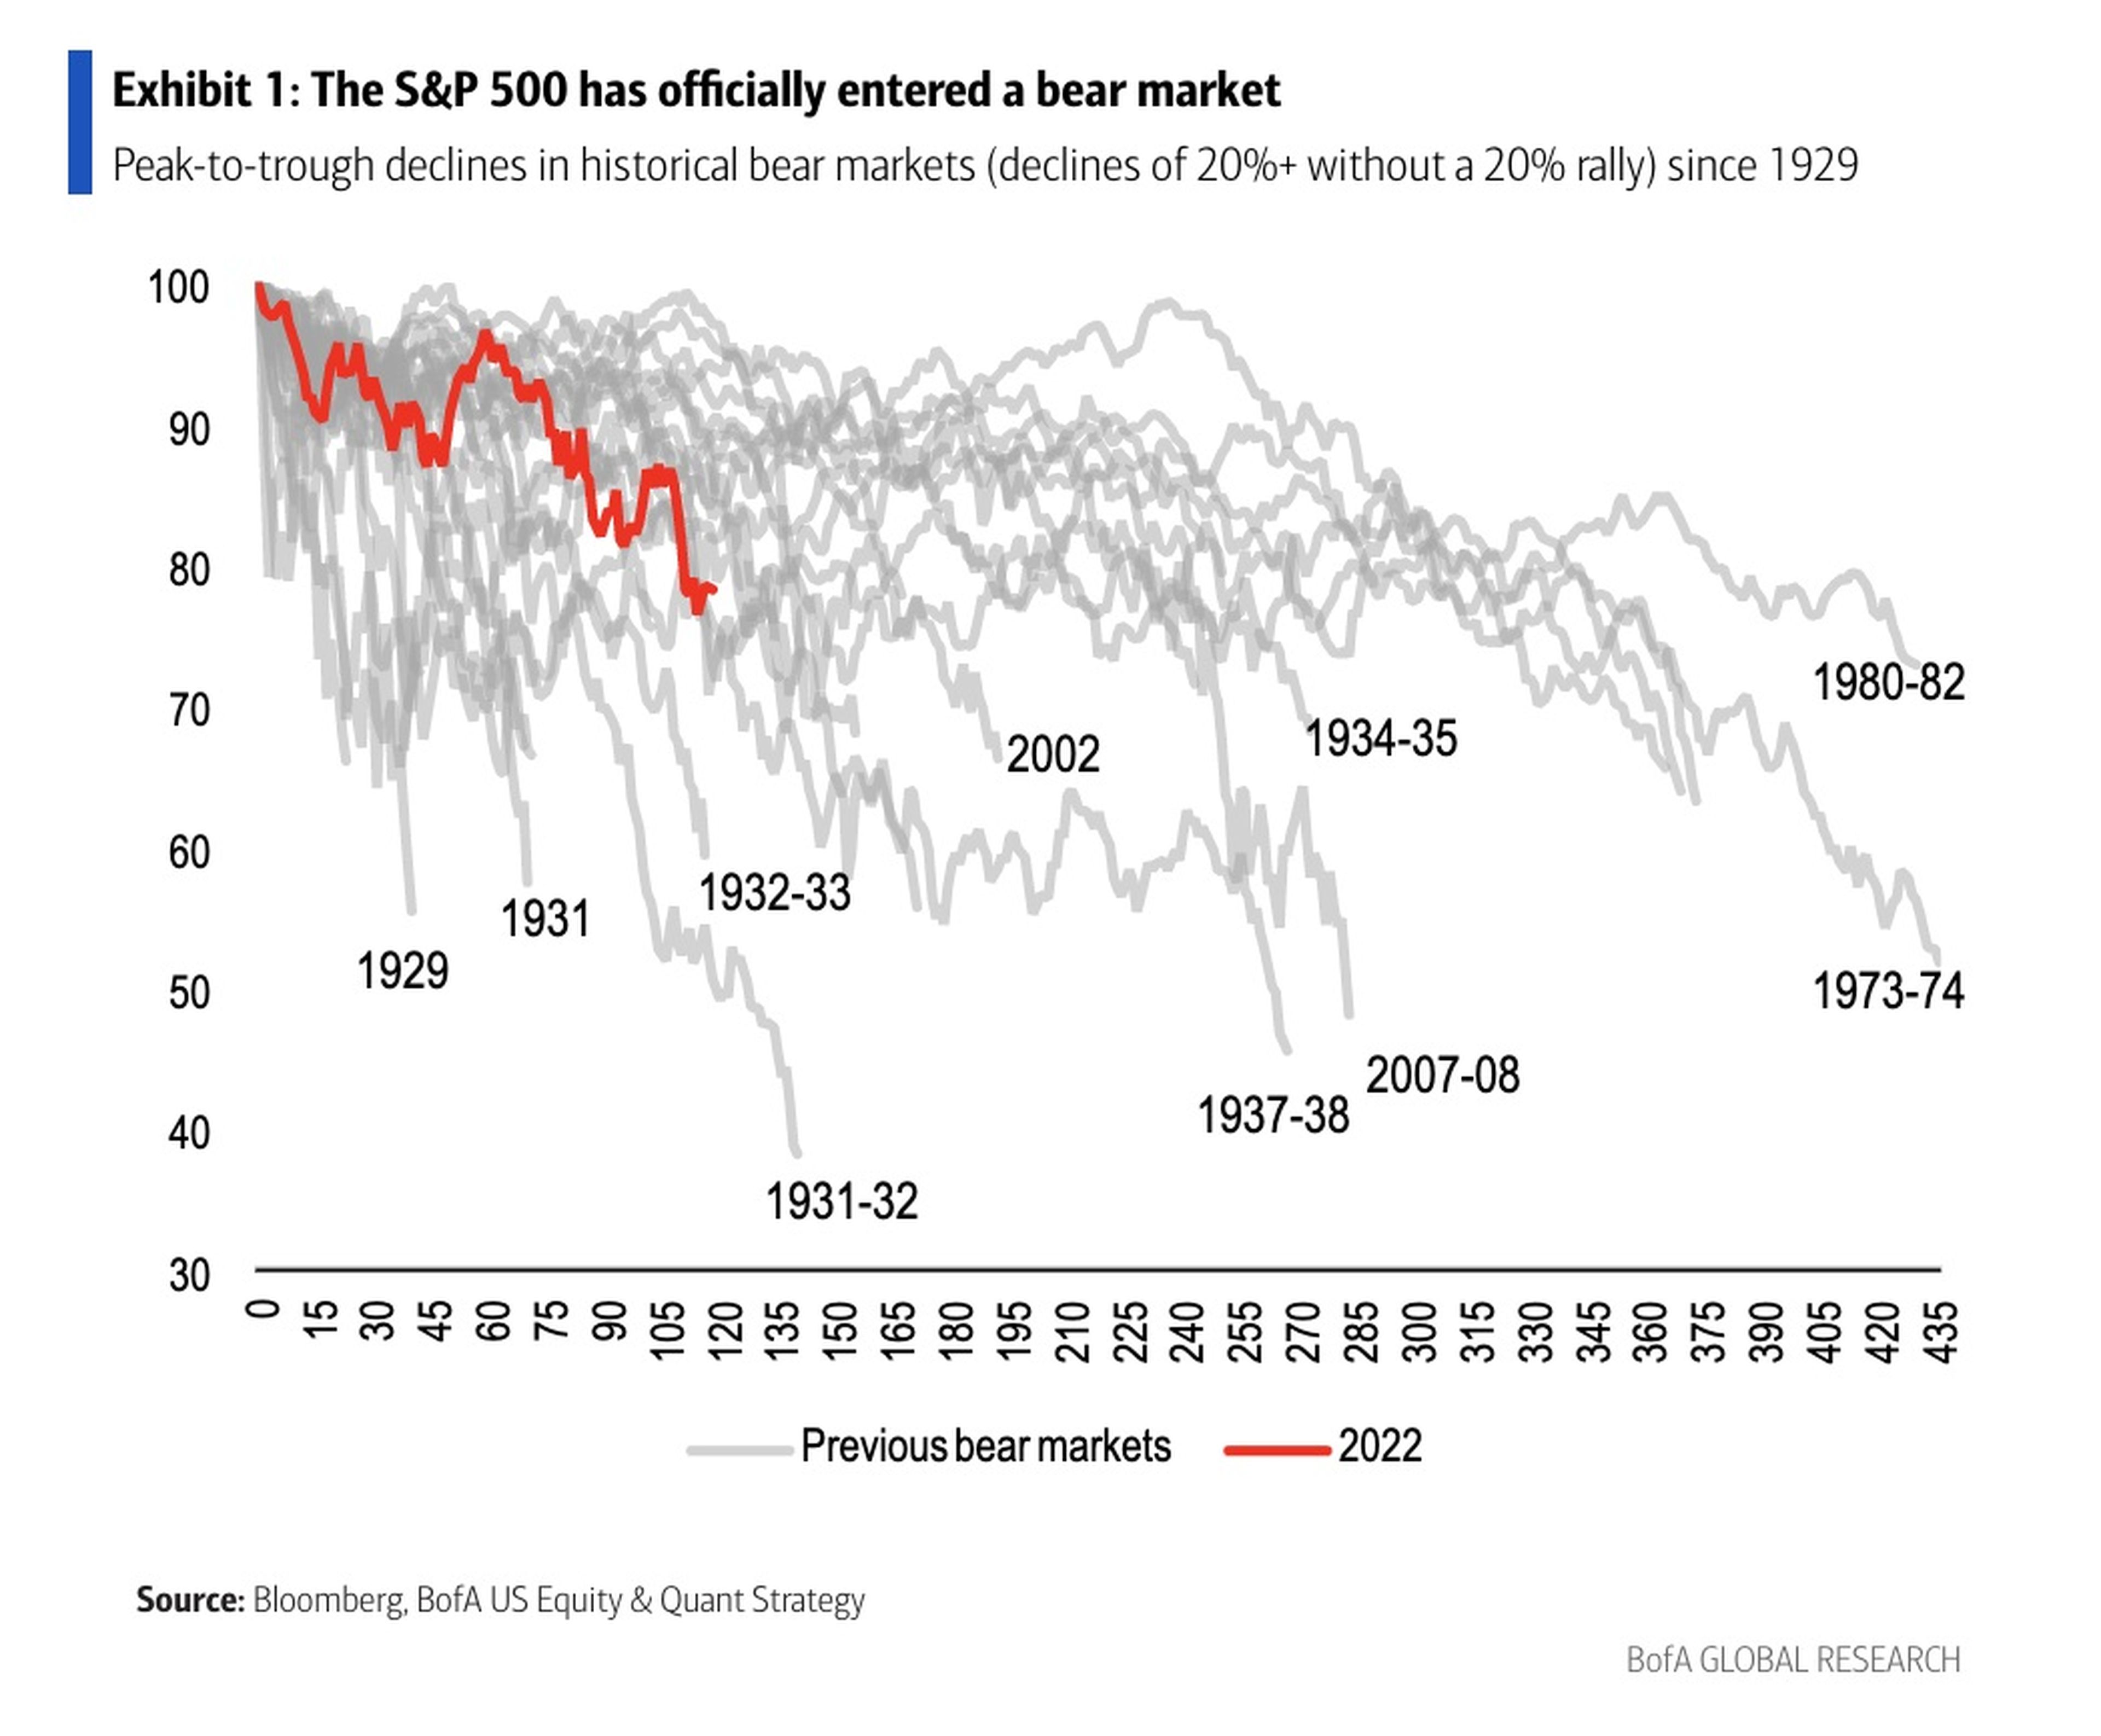 Descensos de pico a valle en los mercados bajistas históricos (descensos de más del 20% sin un repunte del 20%) desde 1929.